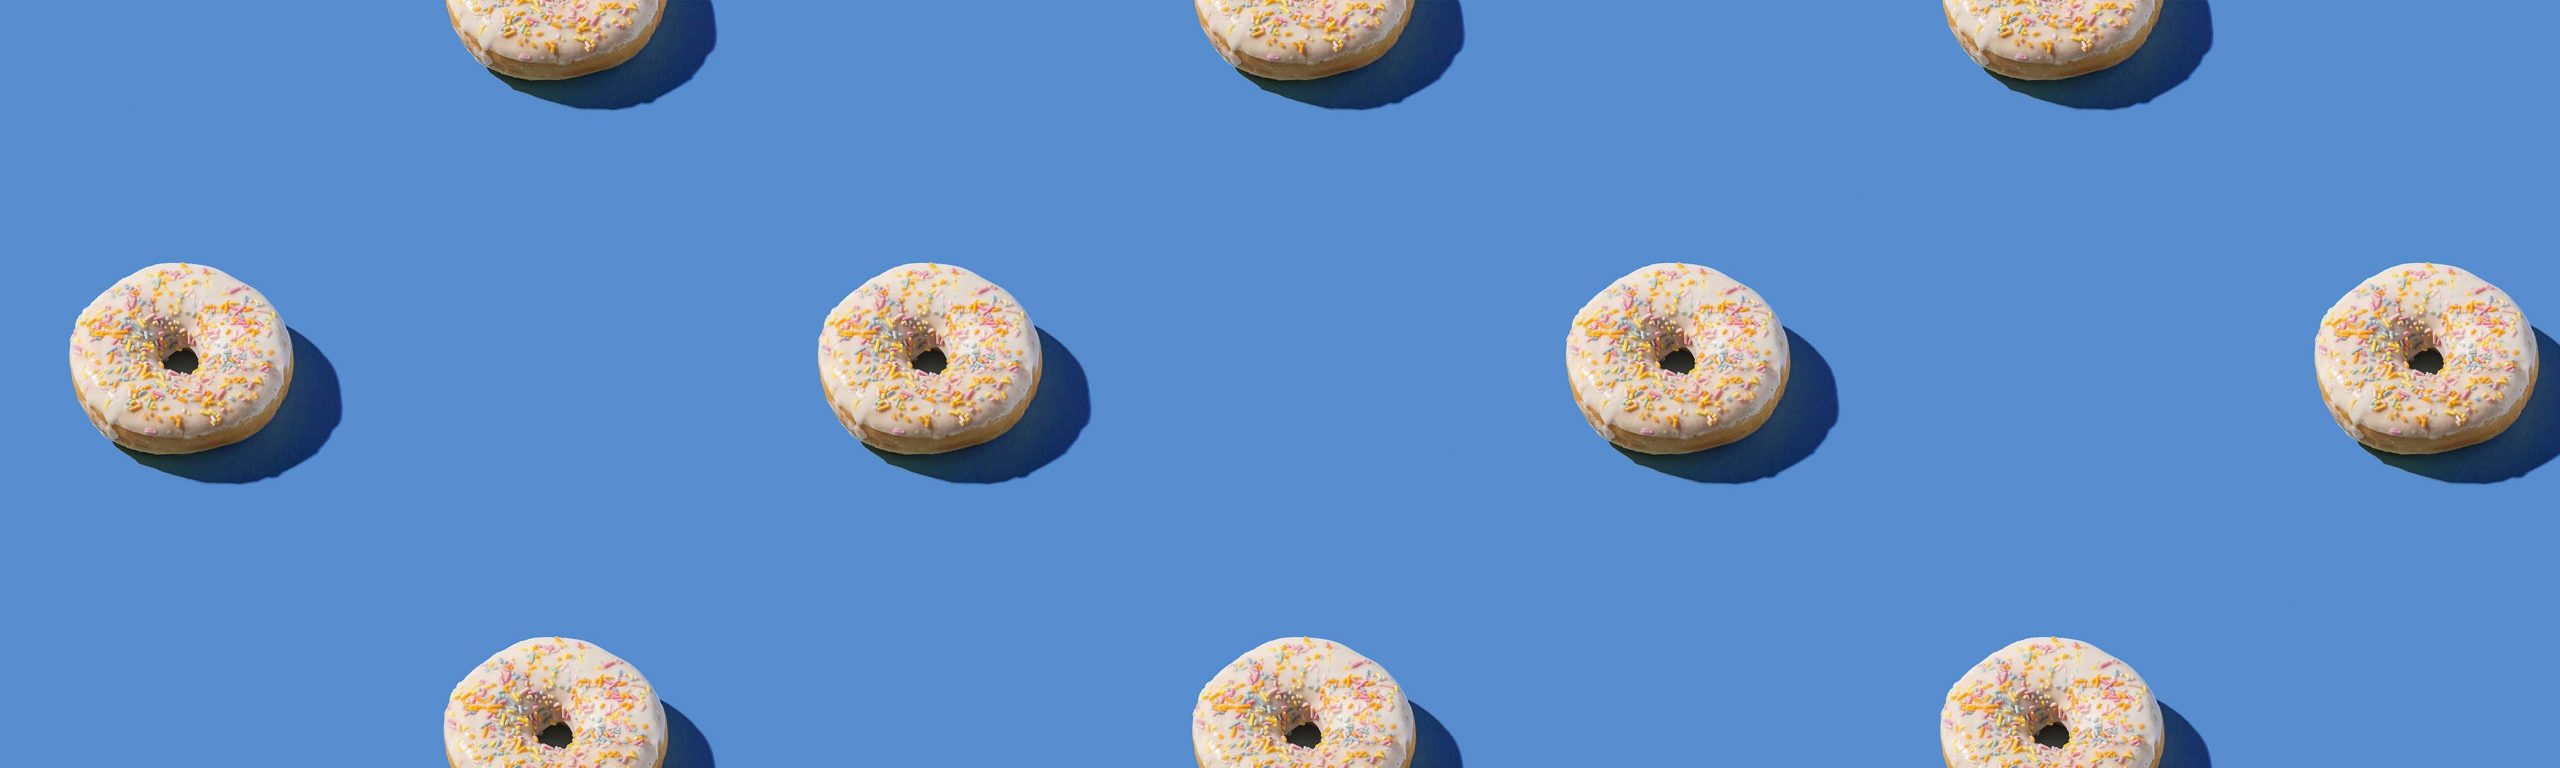 Doughnut economics: istruzioni per immaginare una “dolce” era post pandemica